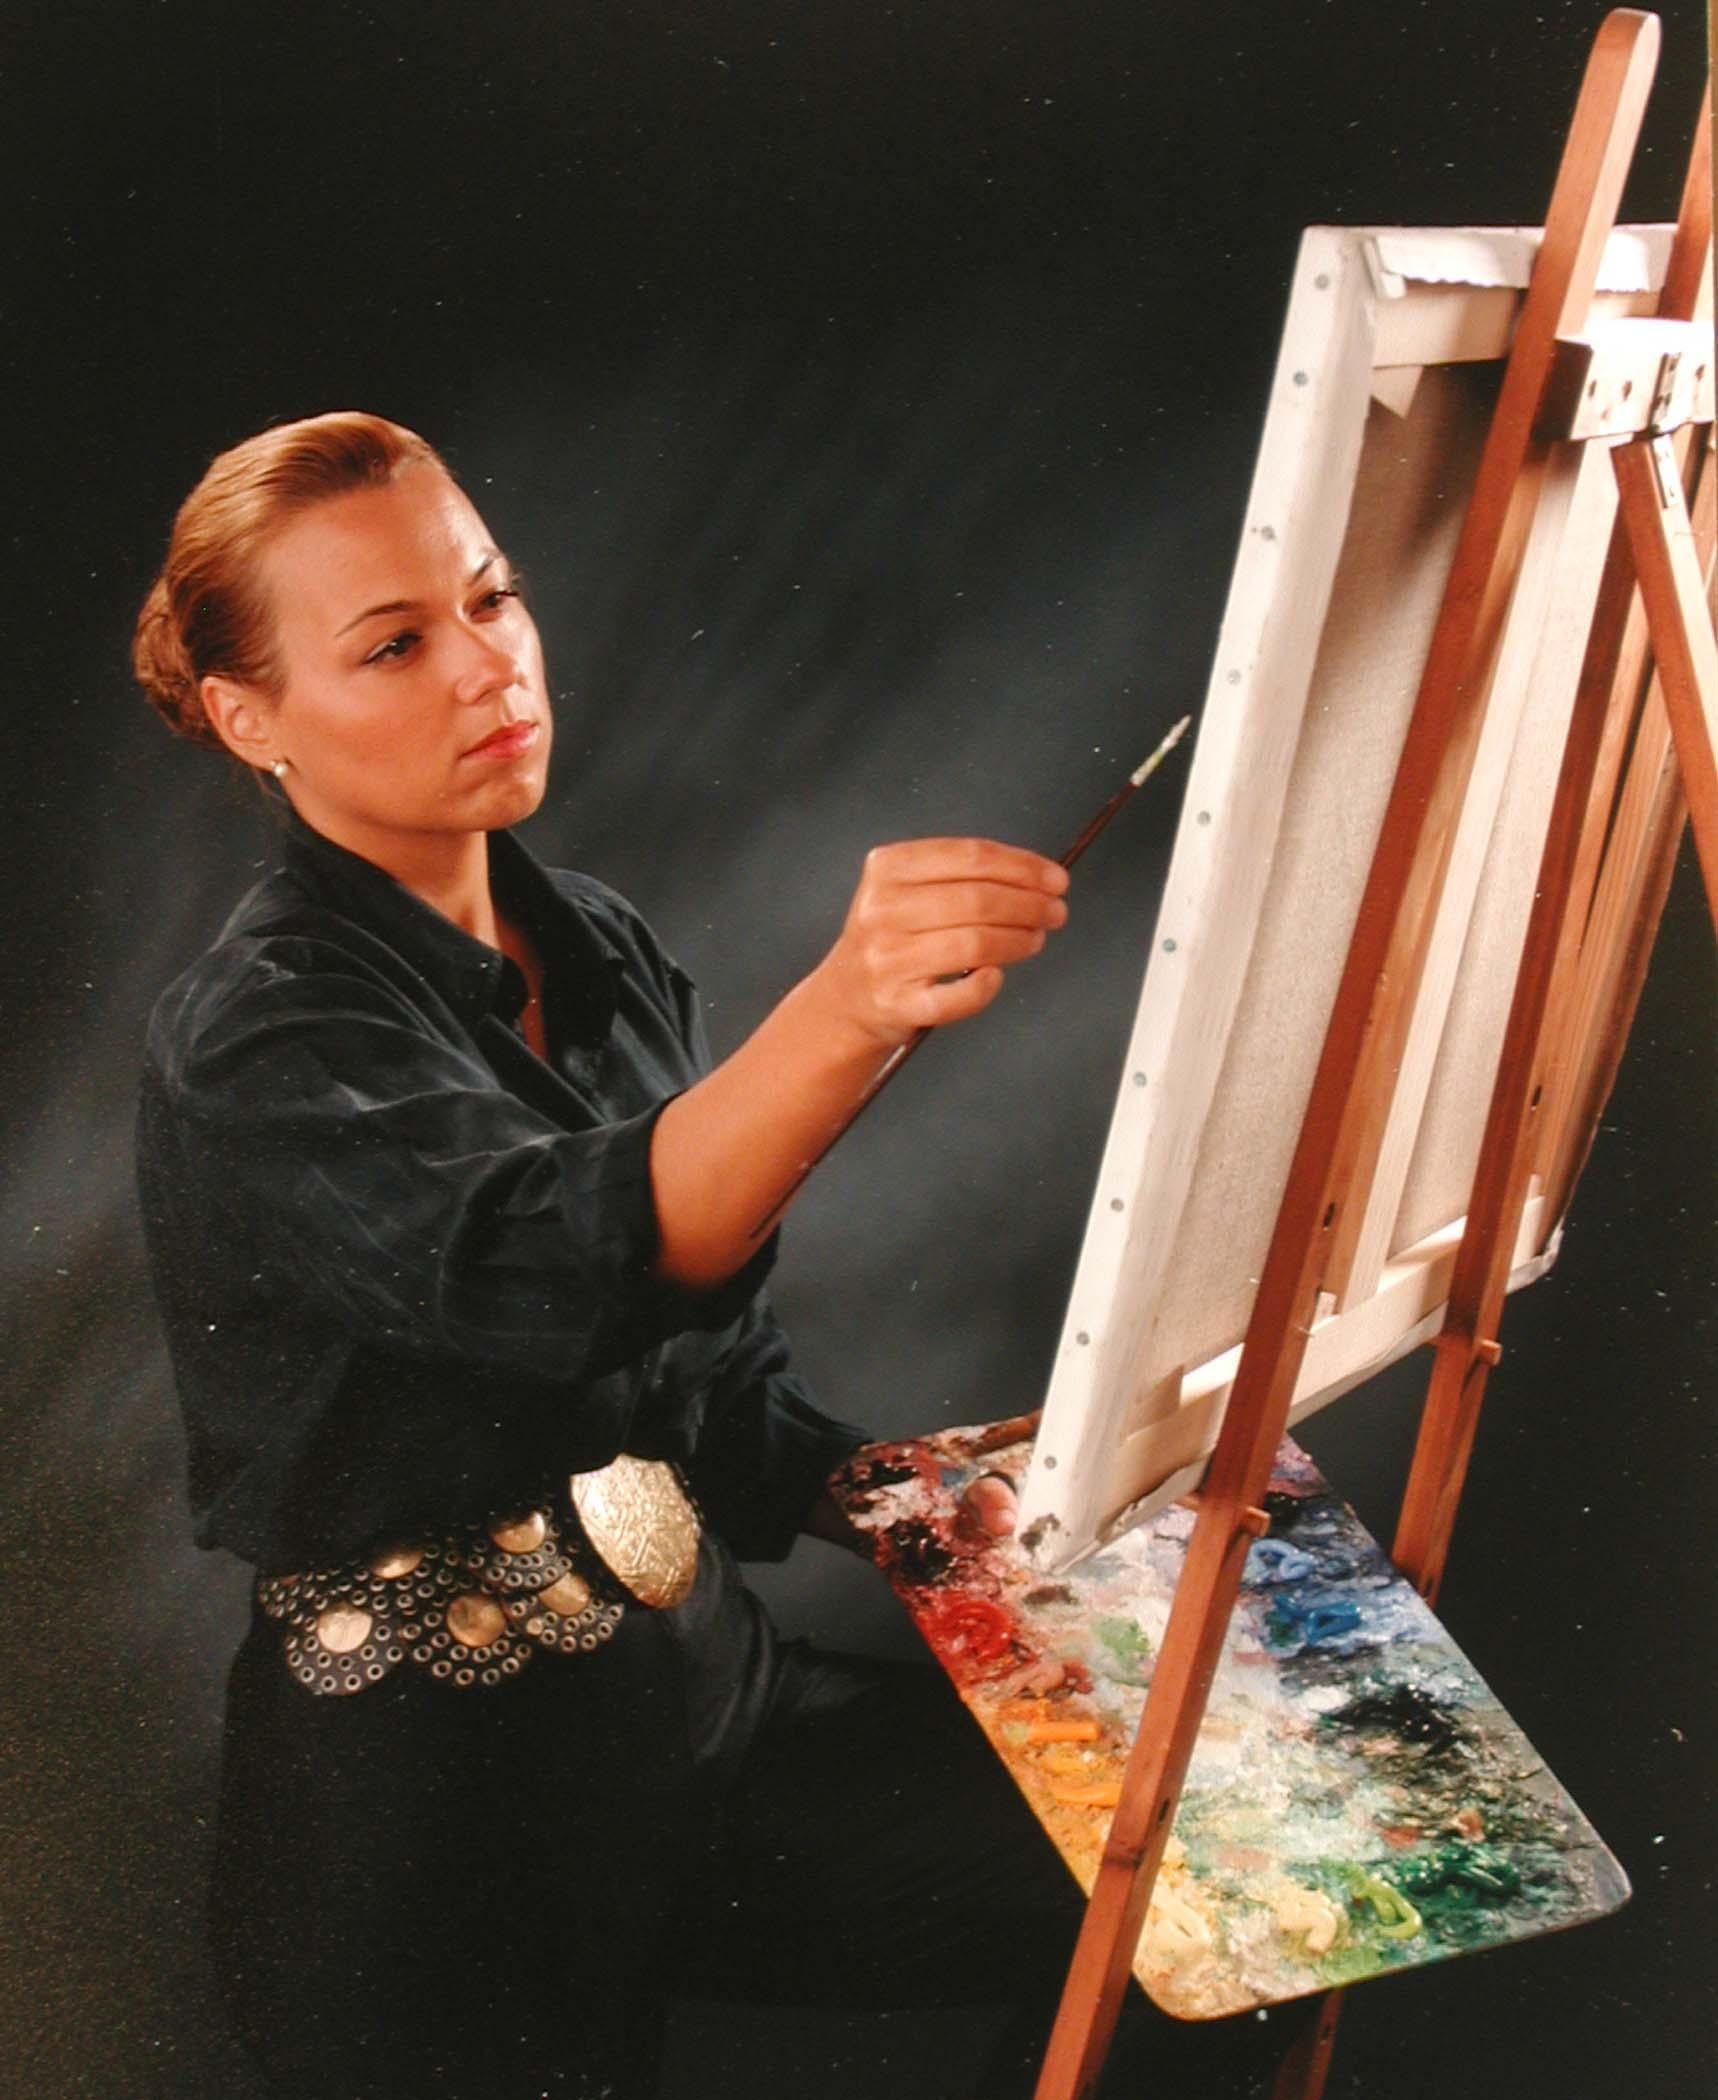 Idéalisme transcendantal de Lélia Pissarro (née en 1963)
Acrylique et paillettes sur toile
70 x 100 cm (27 ¹/₂ x 39 ³/₈ pouces)
Signé en bas à droite, Lélia Pissarro ;
signé, titré et daté au revers
Exécuté en 2007

Cette œuvre est accompagnée d'un